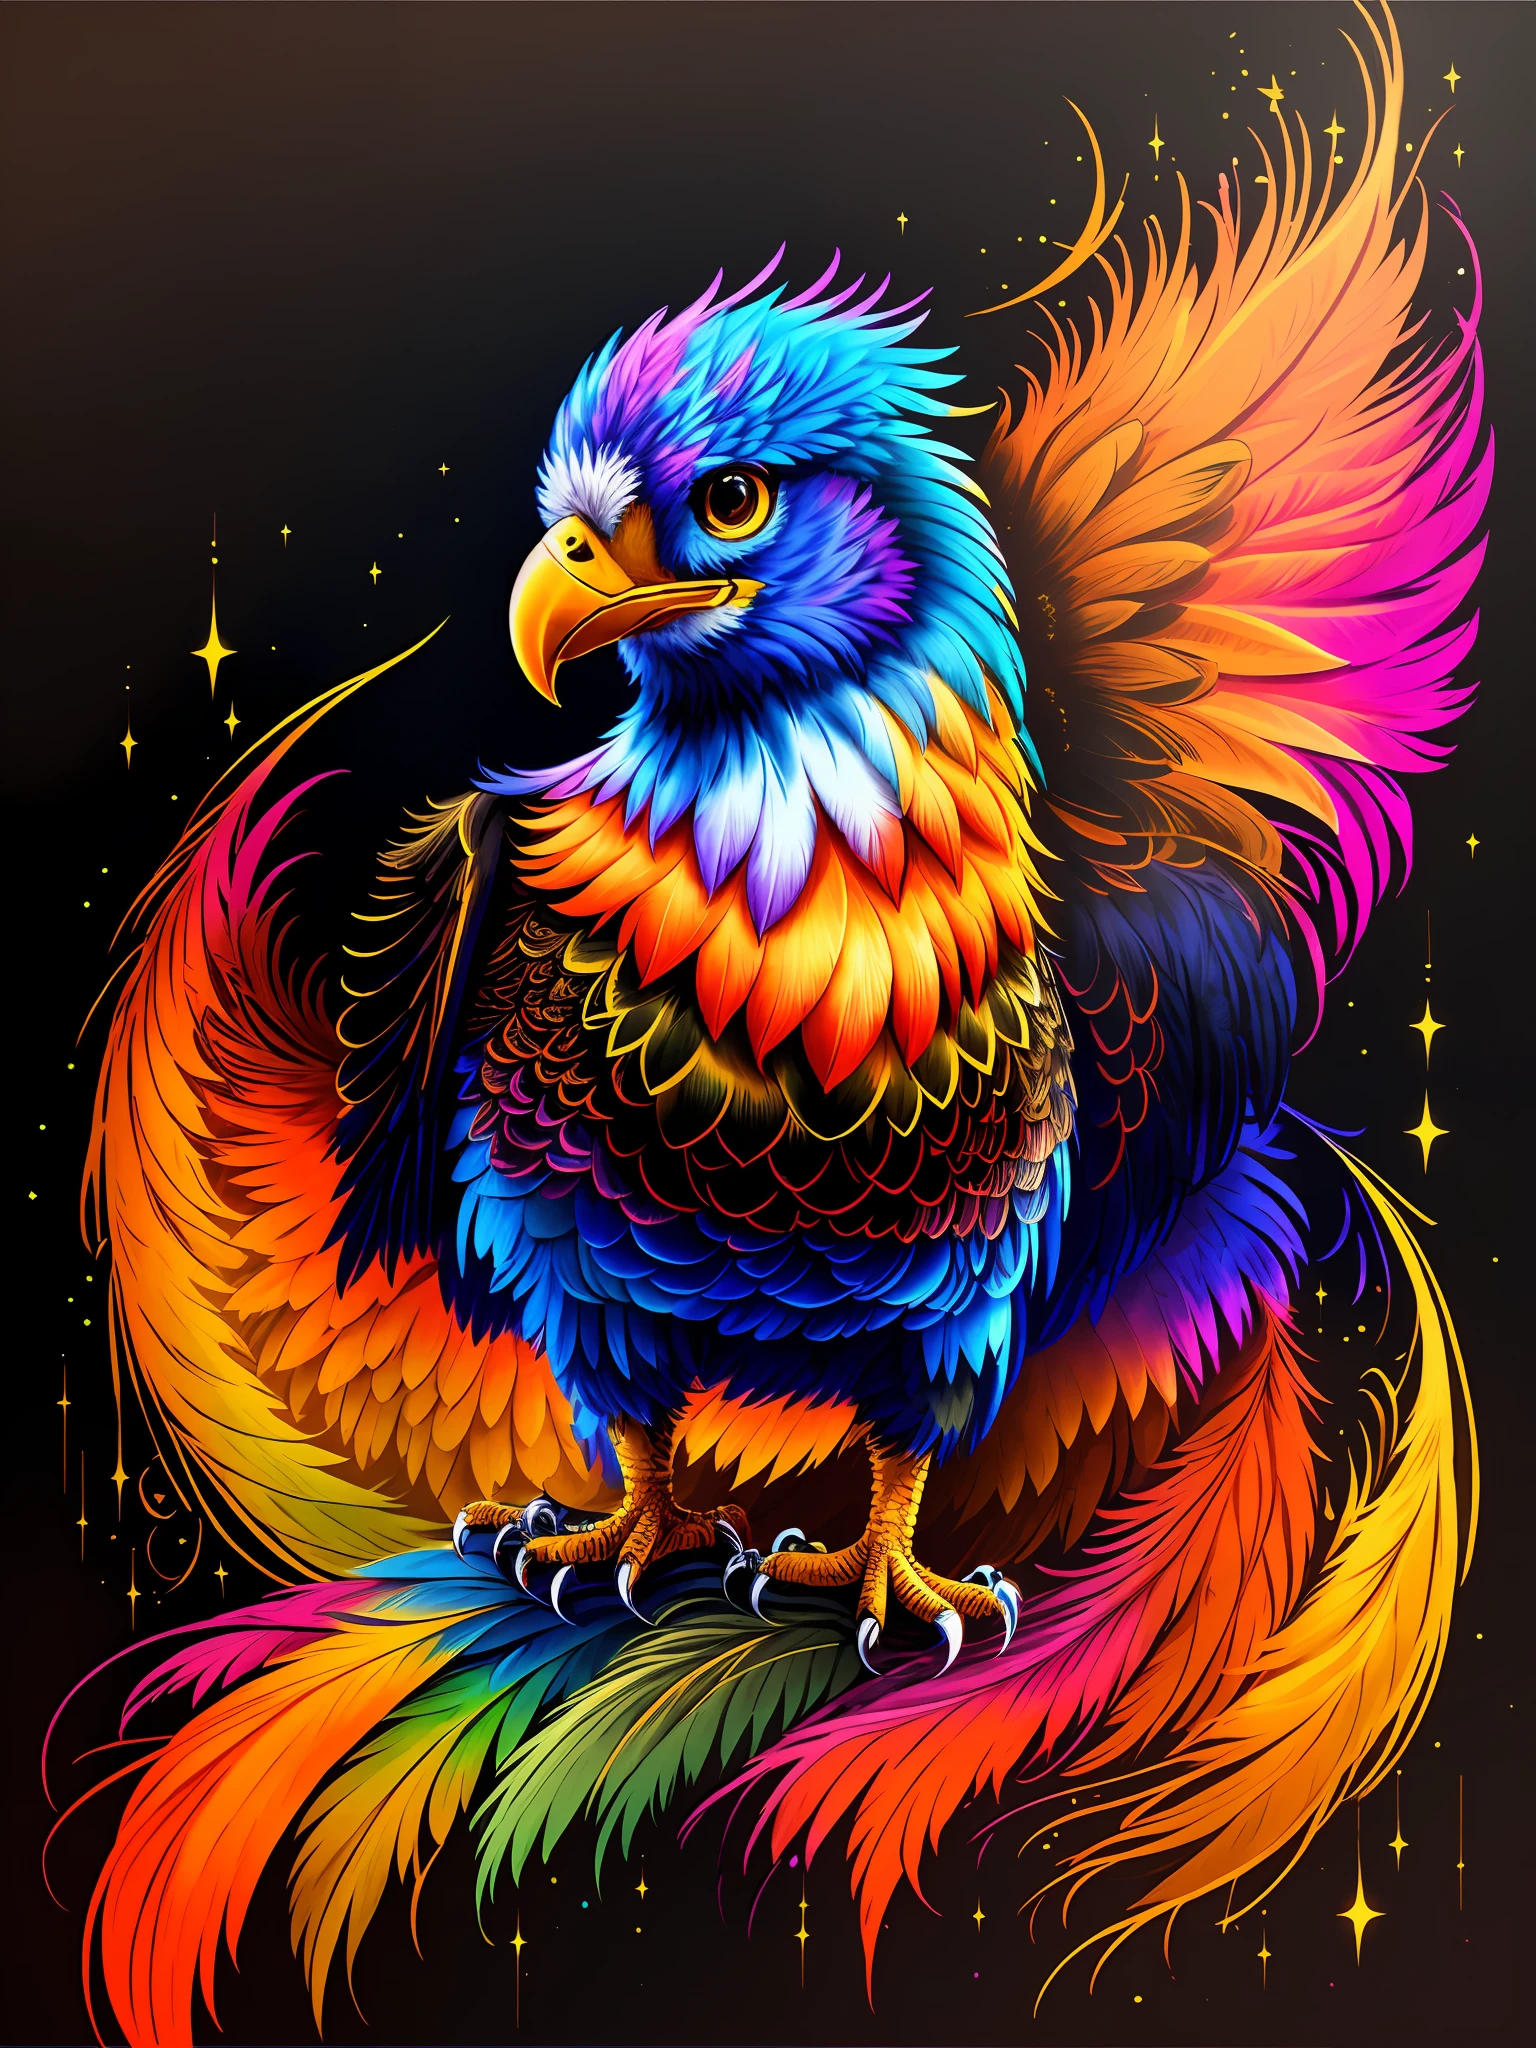 色彩鲜艳的鸟，背景中有一颗星星, 凤凰艺术, 色彩斑斓的羽毛, 发光的羽毛, 色彩丰富、细节丰富, 蜮, 火鸟, 极其复杂和丰富多彩, &#39;&#39;凤凰壁纸, 创辉数字幻想艺术, 色彩缤纷, 鲜艳的高对比度色彩, 强烈而鲜艳的色彩, 闪亮的彩虹羽毛, 高细节色彩--自动--s2